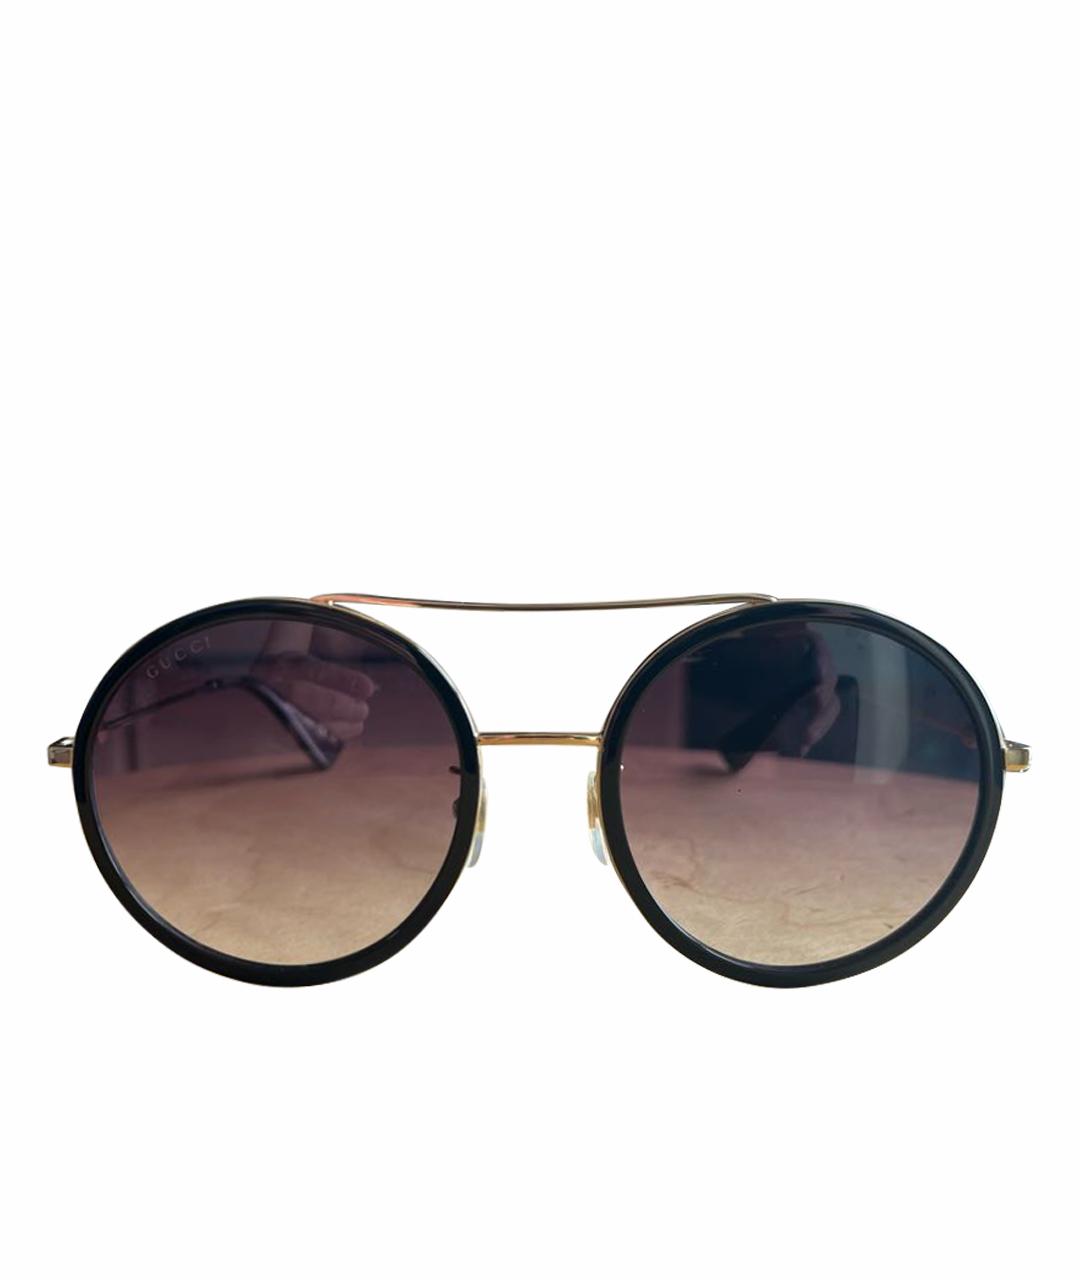 GUCCI Золотые пластиковые солнцезащитные очки, фото 1